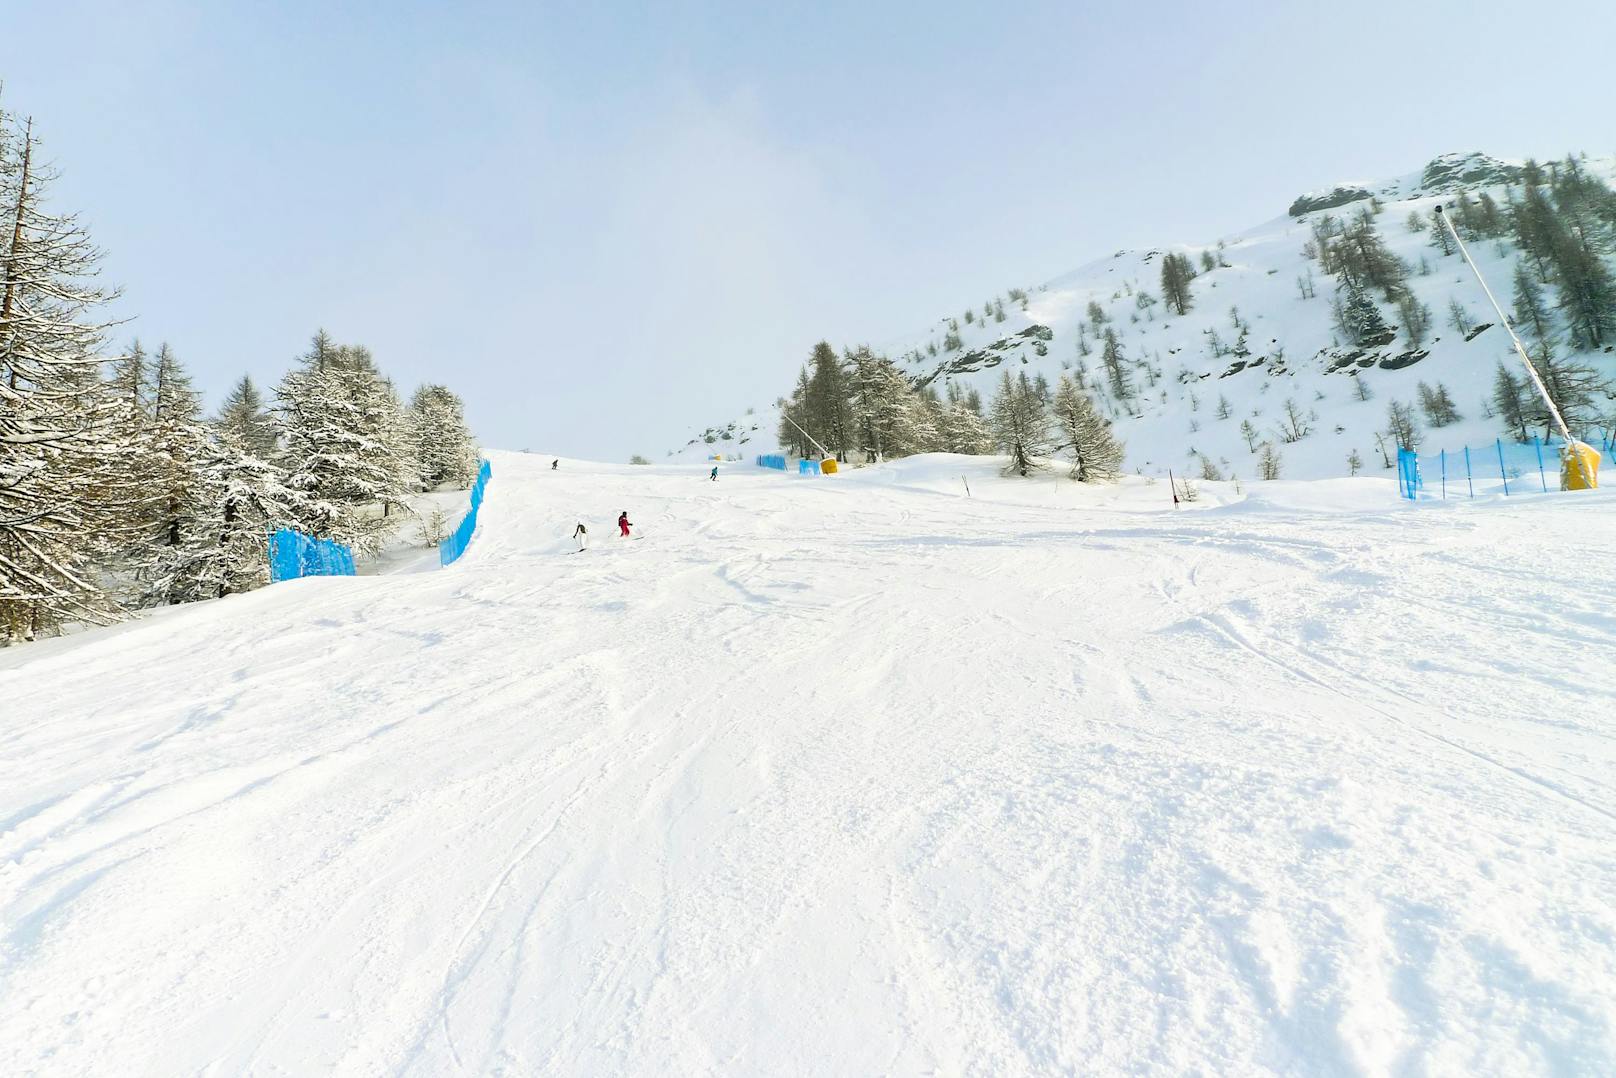 <strong>Platz 5:</strong> Das Wintersportgebiet "Via Lattea" in den Alpen an der französisch-italienischen Grenze lockt mit&nbsp;400 Pistenkilometern und 51 Euro pro Tageskarte für Erwachsene.